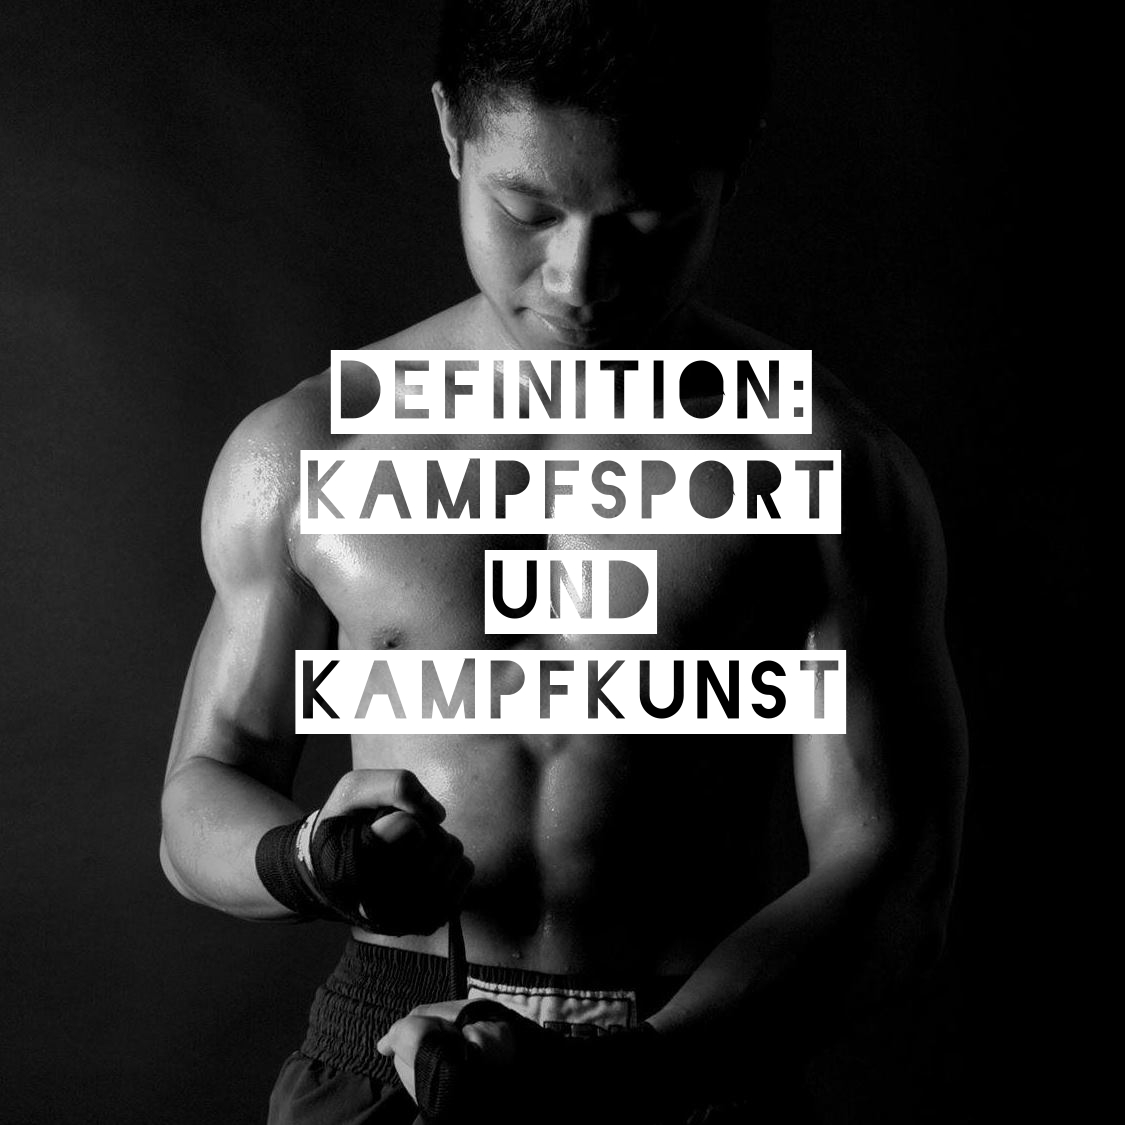 Kampfsport_und_Kampfkunst.jpg